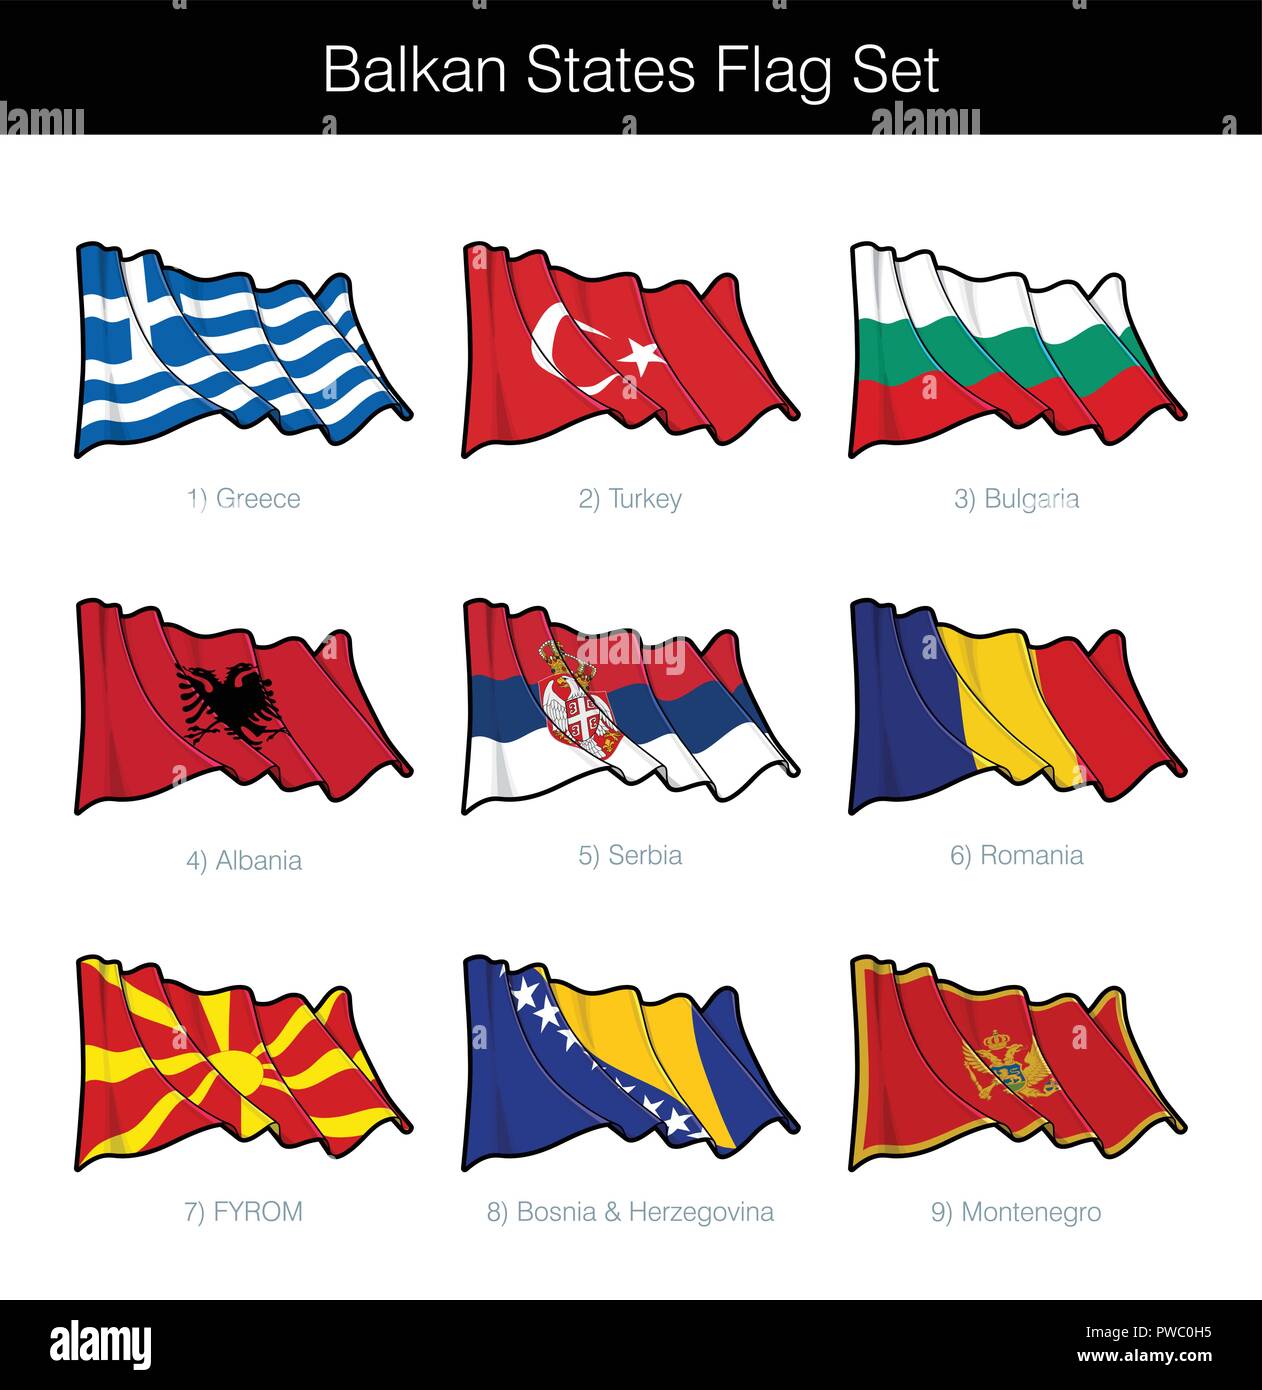 Balkanstaaten wehende Flagge gesetzt. Das Set beinhaltet die Flaggen von Griechenland, die Türkei, Bulgarien, Albanien, Serbien, Rumänien, DER EHEMALIGEN JUGOSLAWISCHEN REPUBLIK MAZEDONIEN, Bosnien und Herzegowina und Monten Stock Vektor